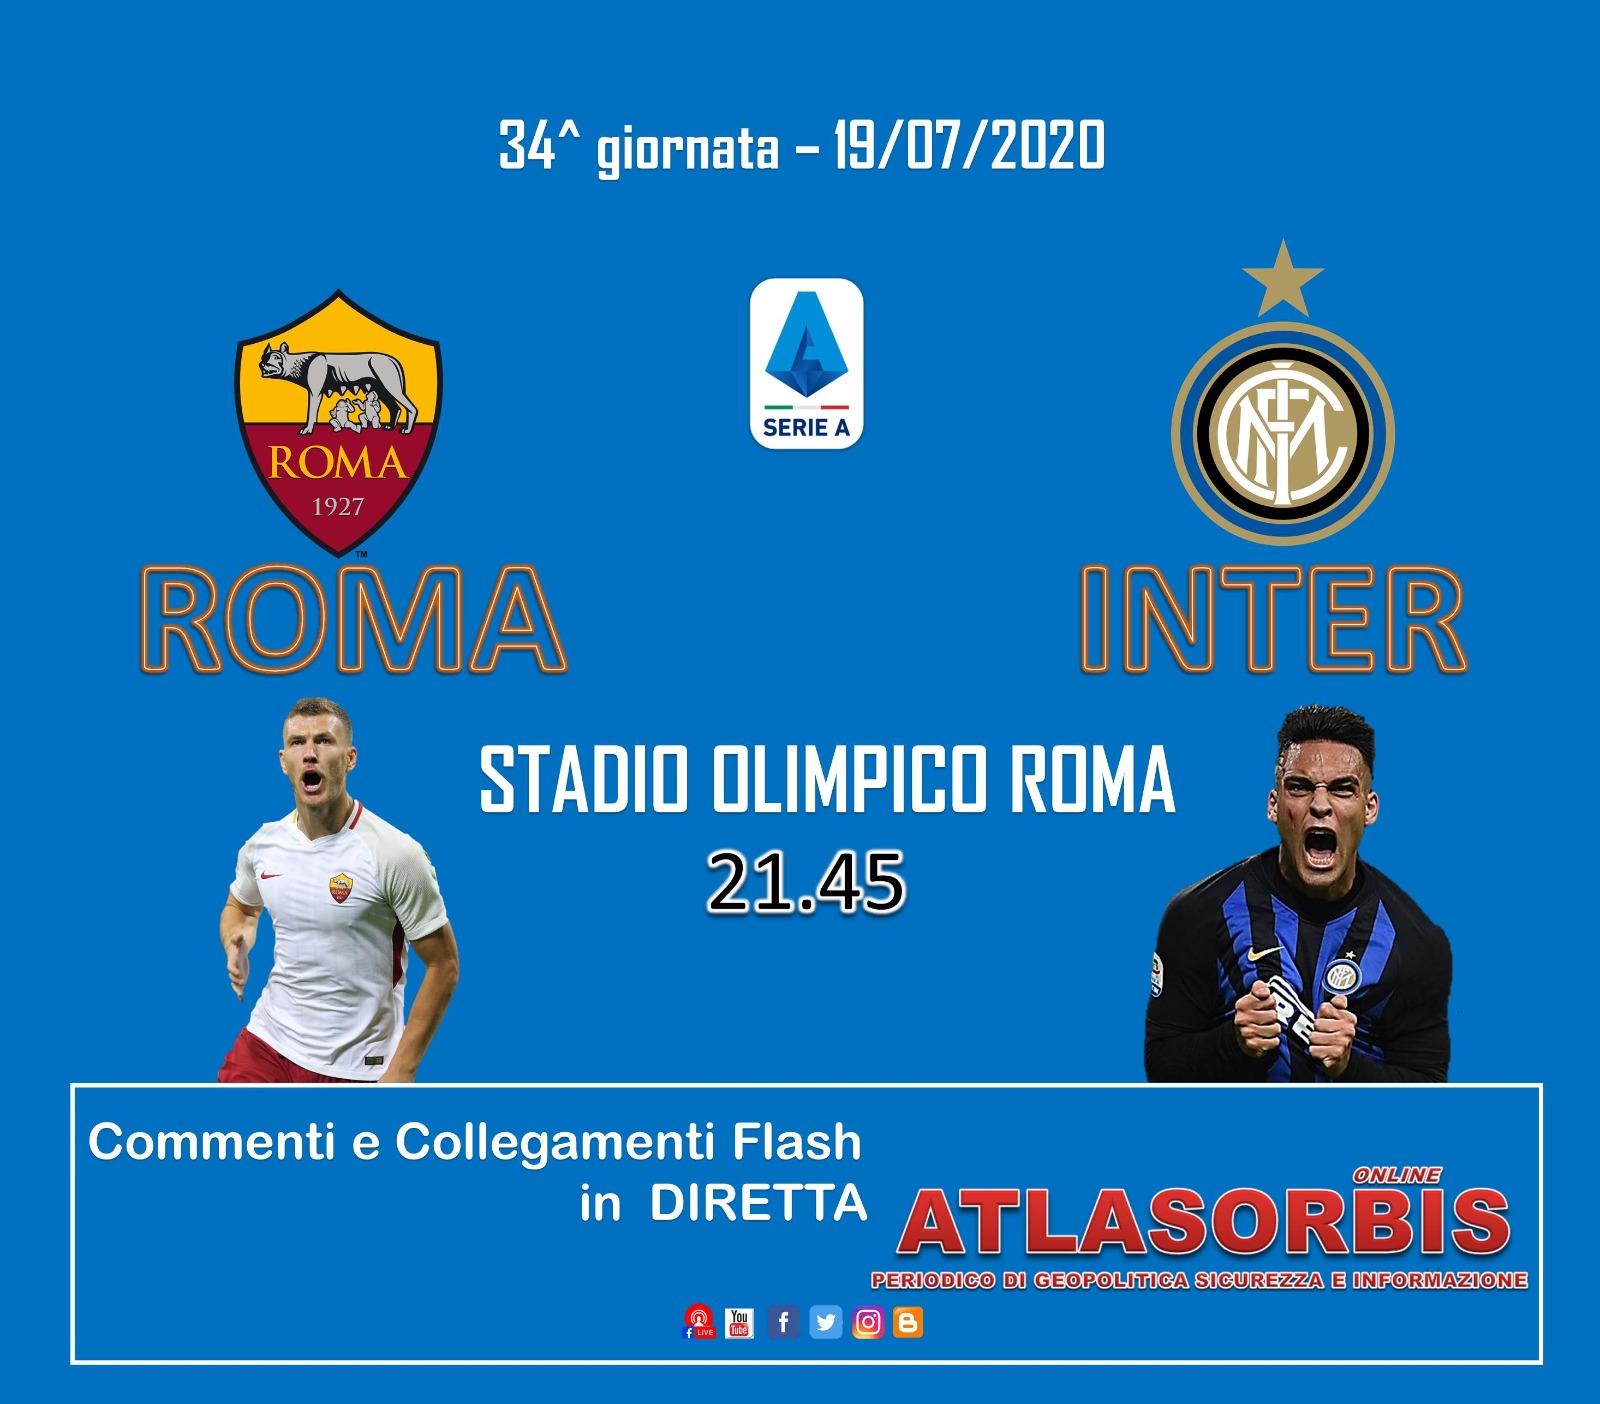 Roma - Inter per la 34° giornata di campionato serie A